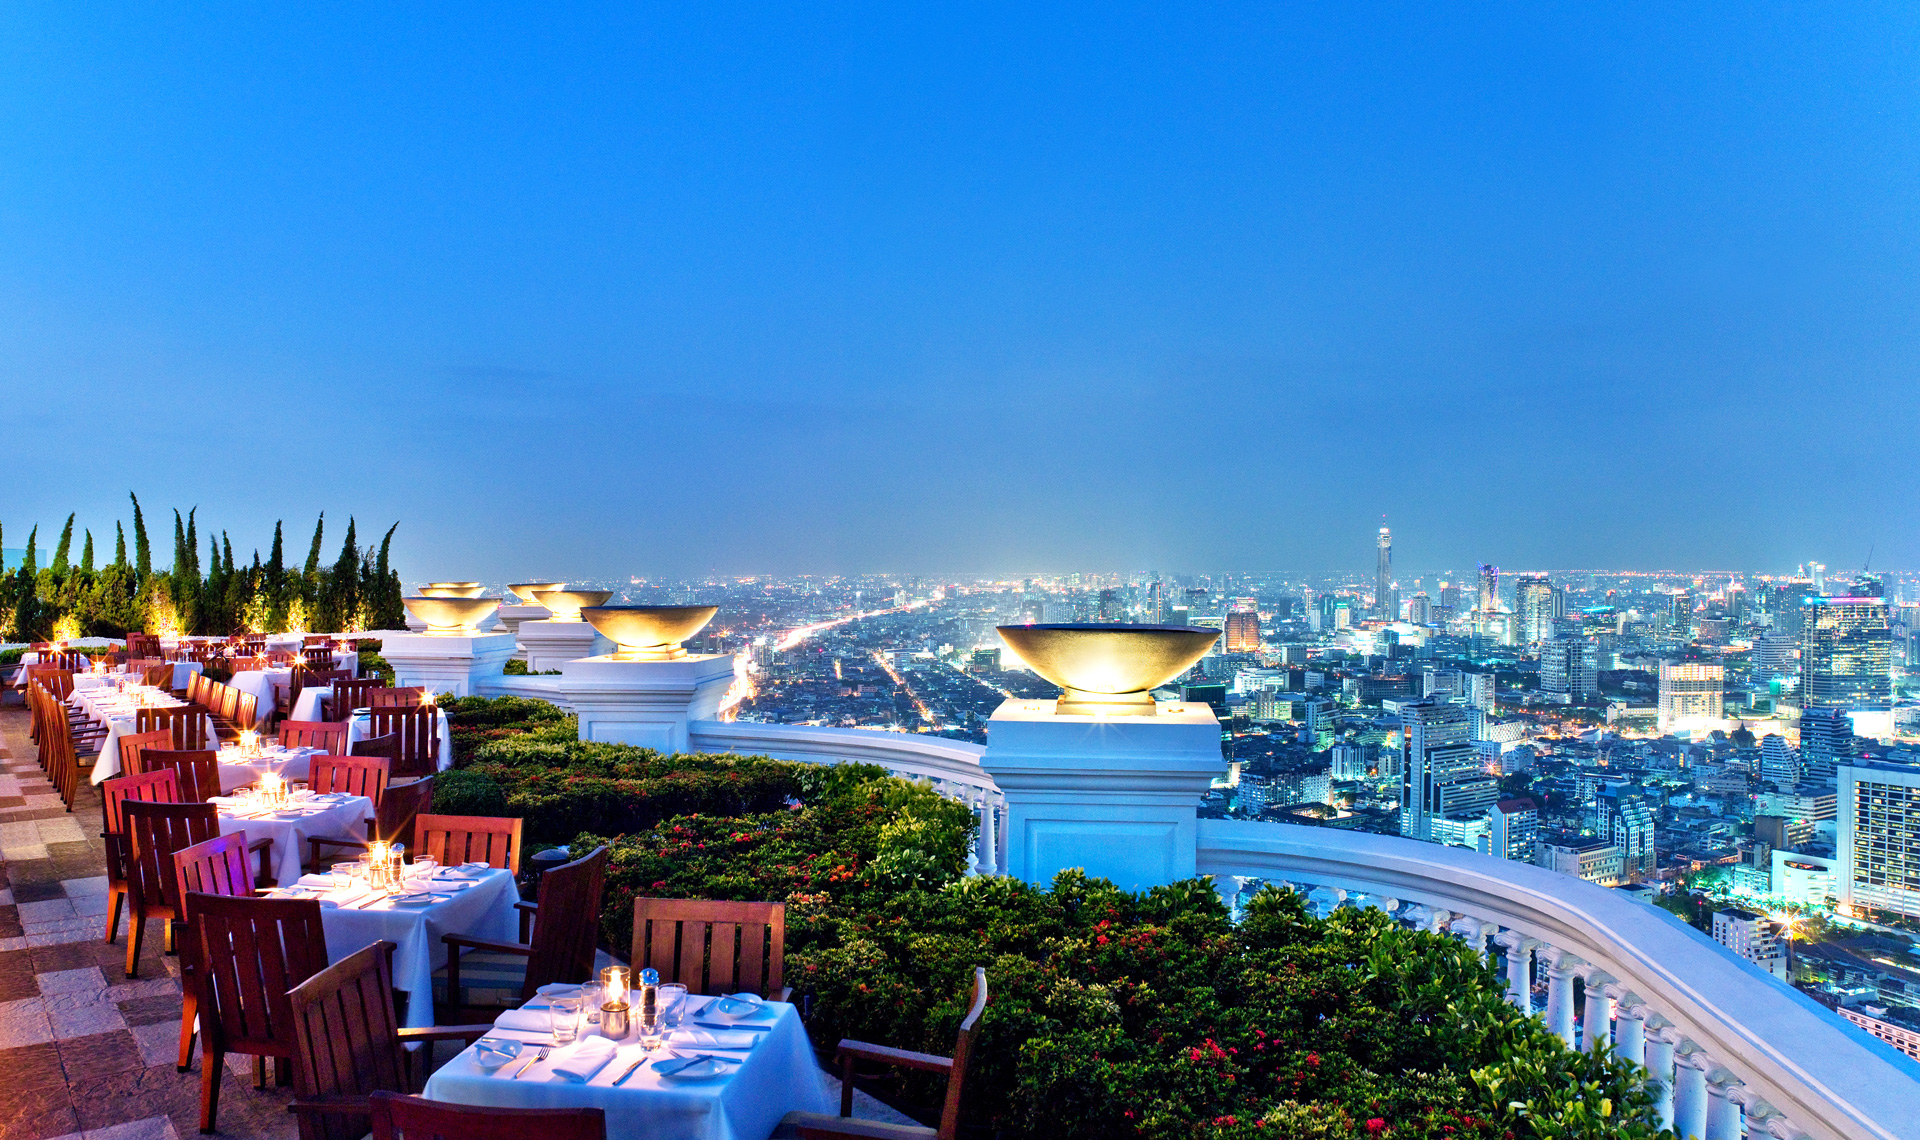 Découvrez le top 10 des plus beaux bars et restaurants rooftop pour boire un verre dans le monde